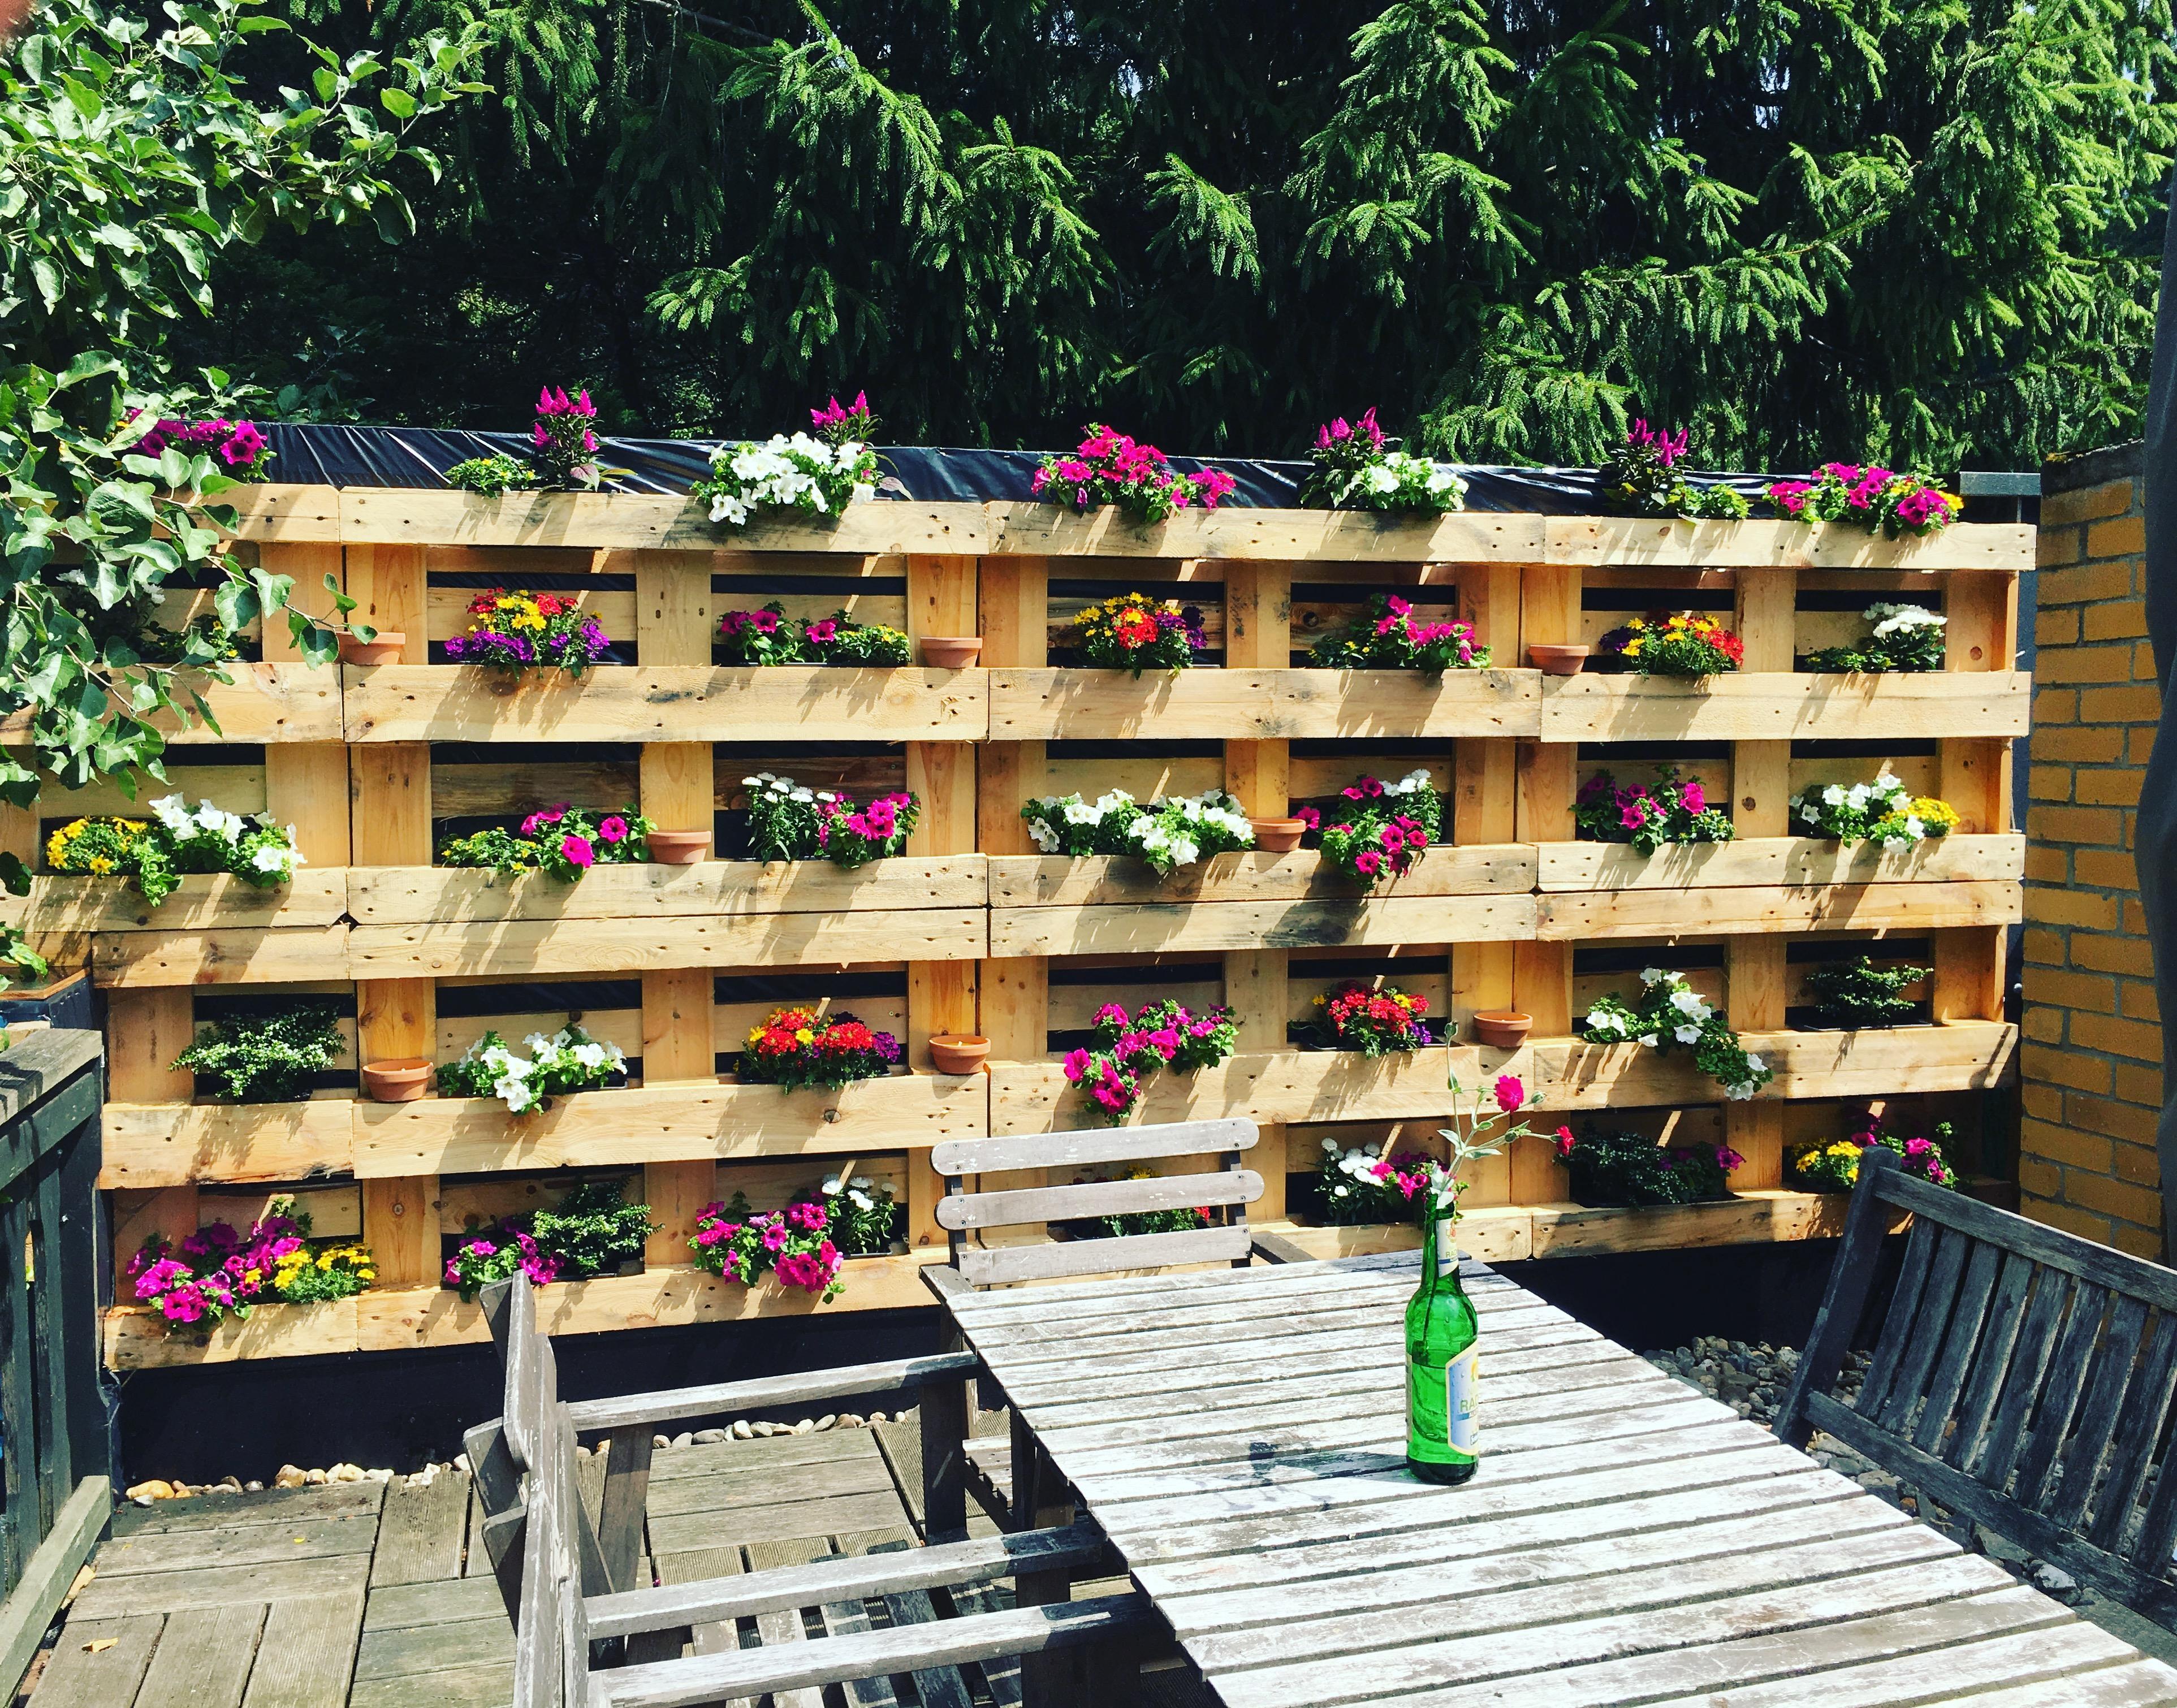 Unser #DIYPalettenprojekt bei Freunden auf der Terrasse: Eine Palettenblumenwand 😎💪 #vondirinspiriert #diyliebe